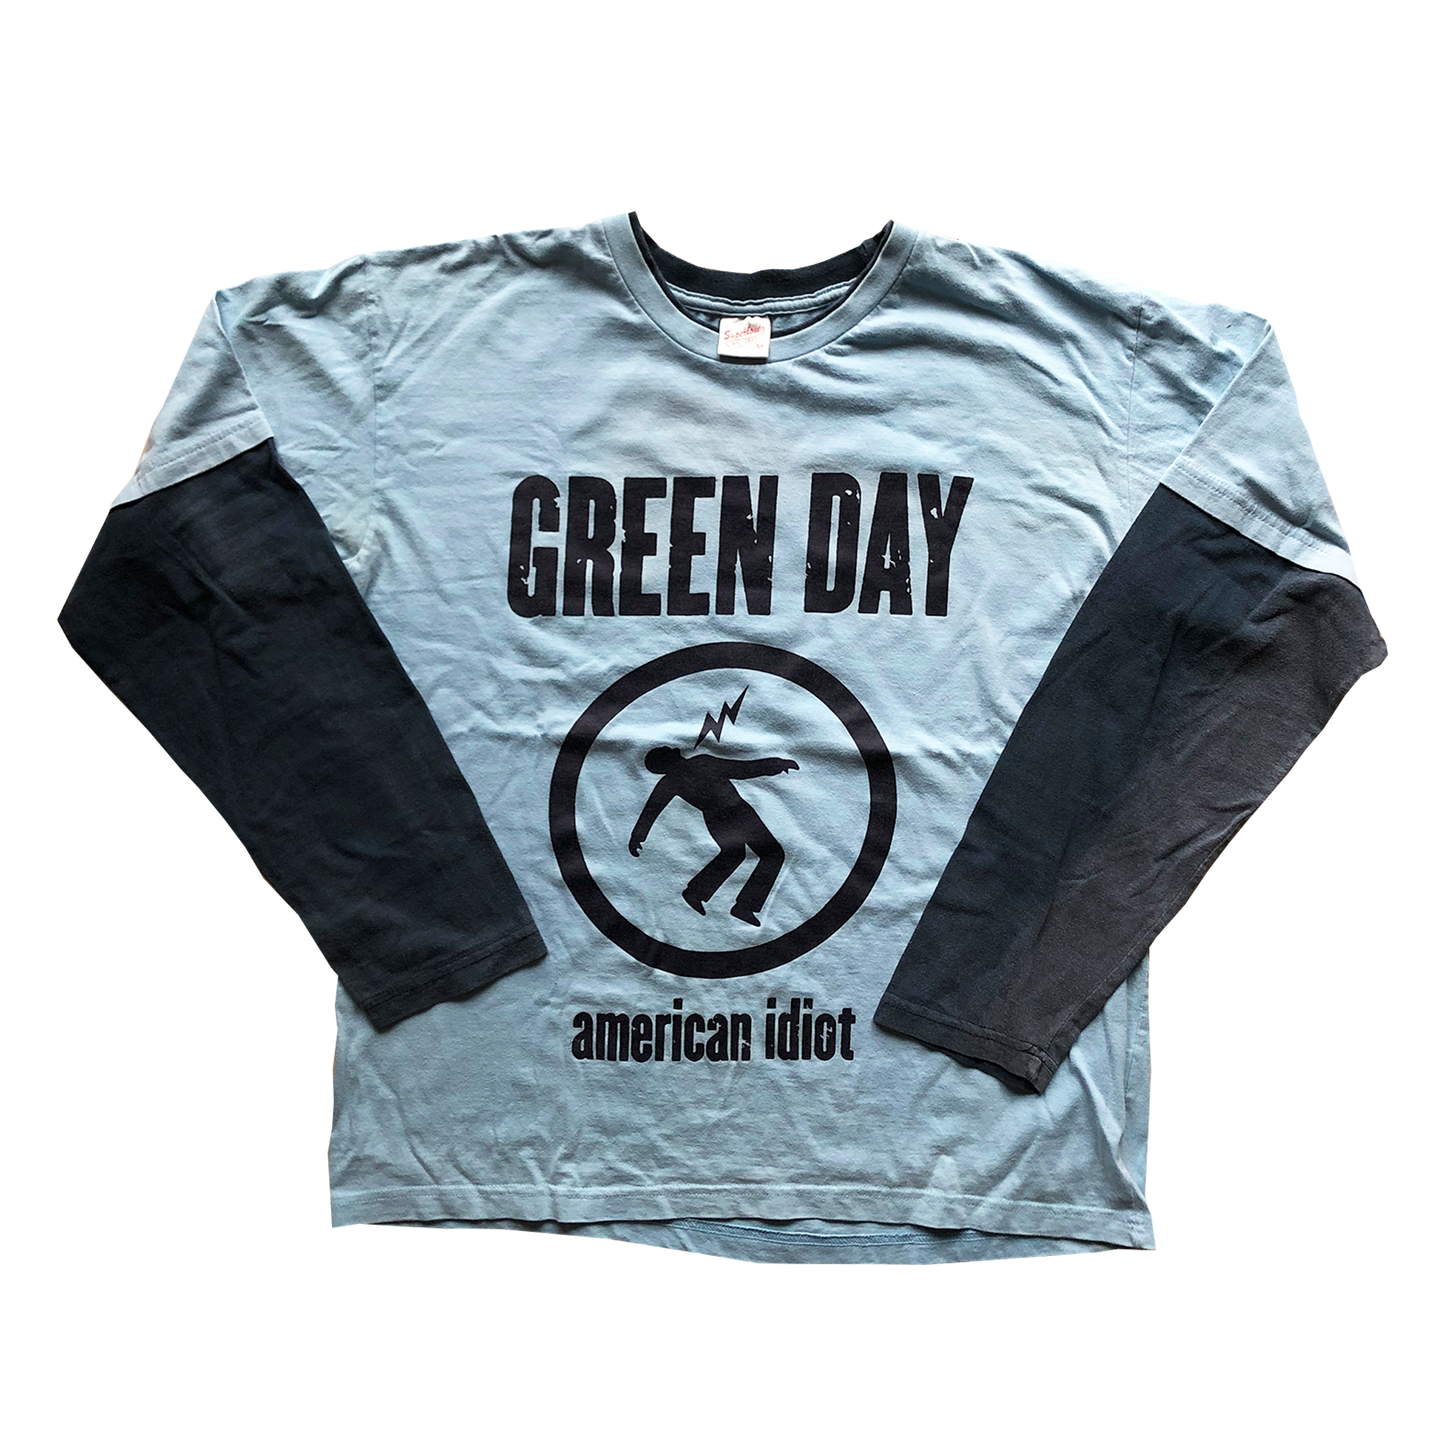 Green Day "American Idiot" European Tour 2005